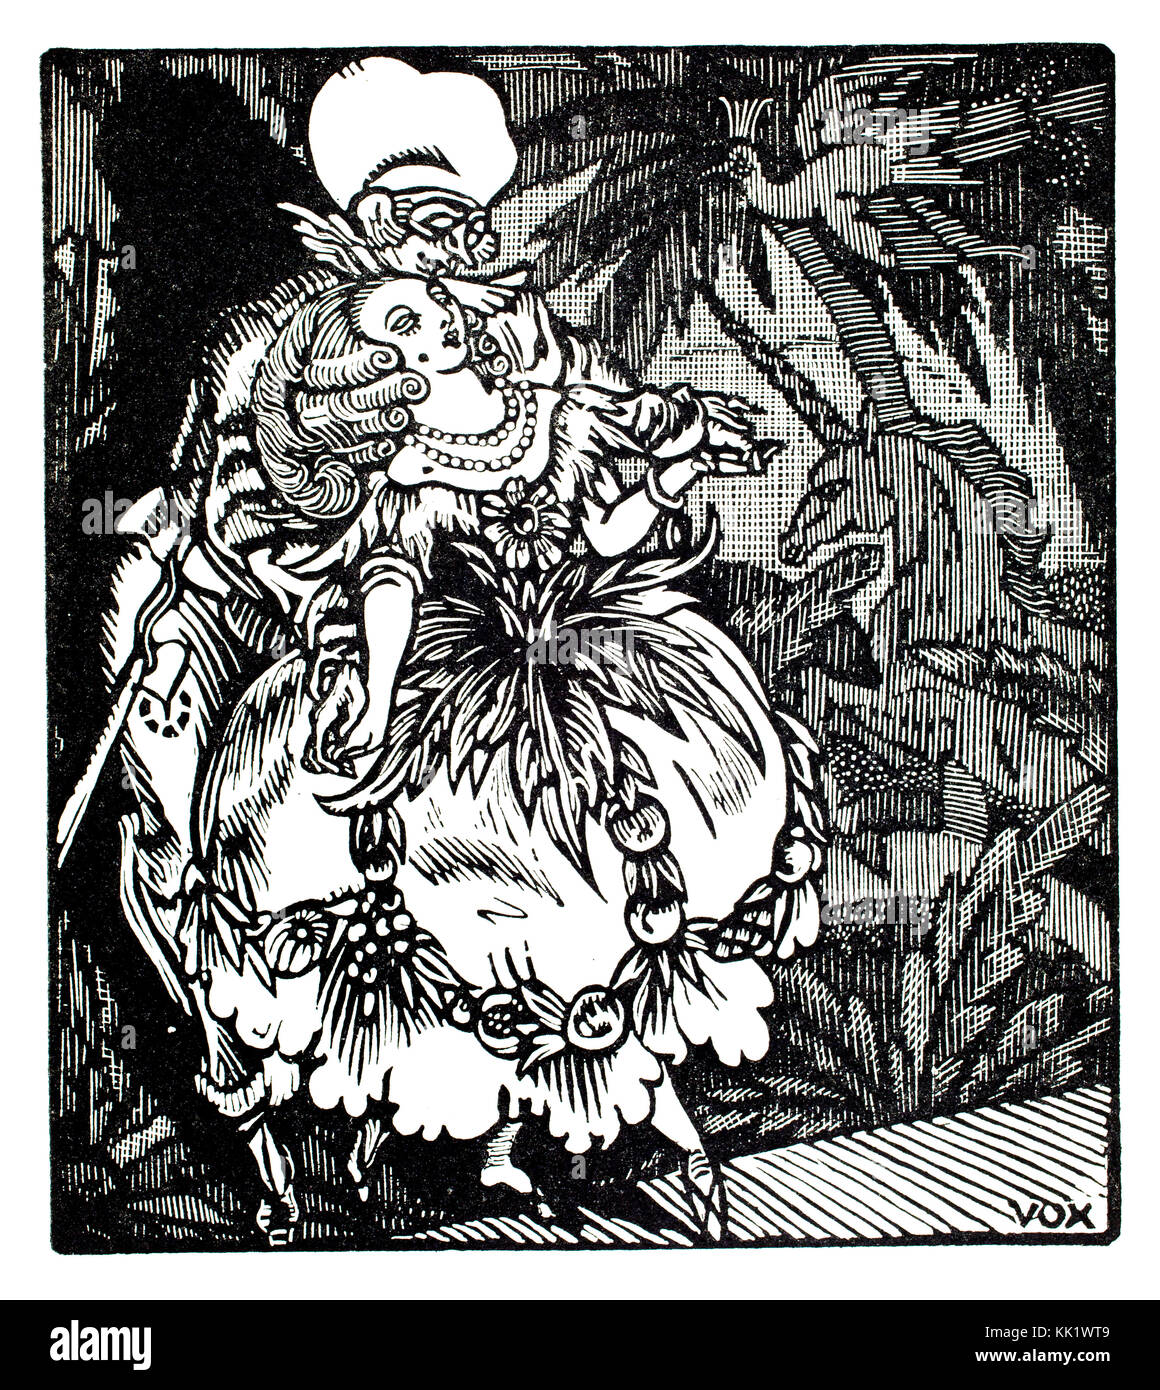 Scène théâtrale, 1920 conçu pour Menu M L COMAR, par l'artiste français Maximillien Vox Banque D'Images